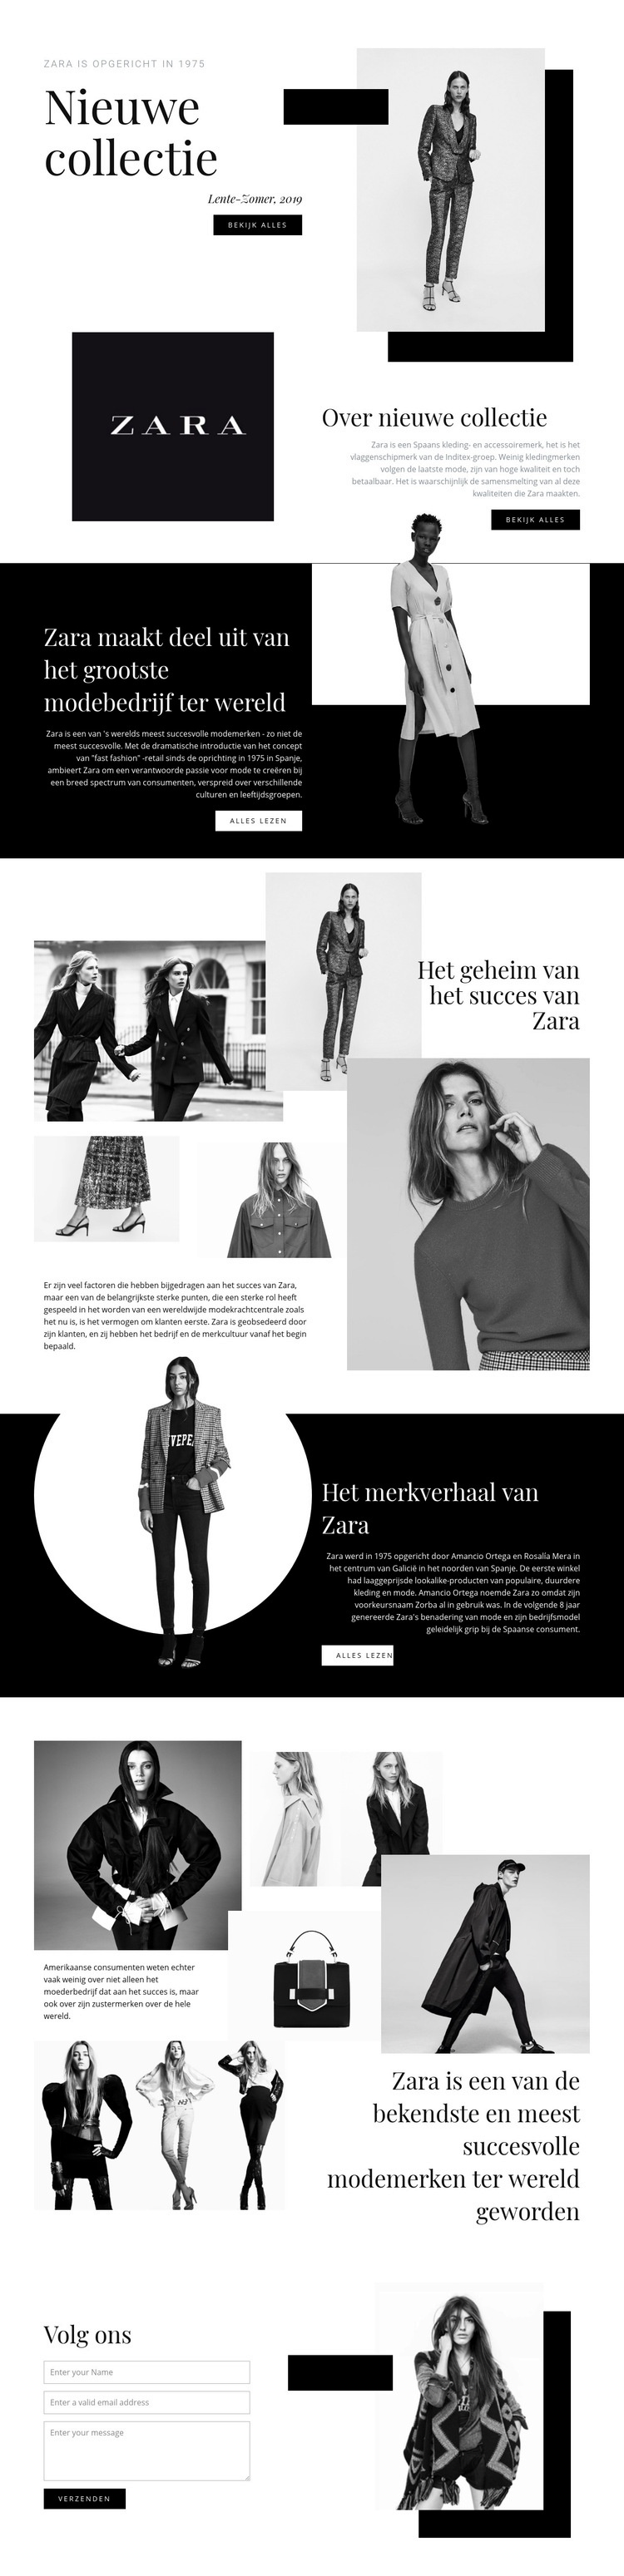 Zara collectie Website mockup